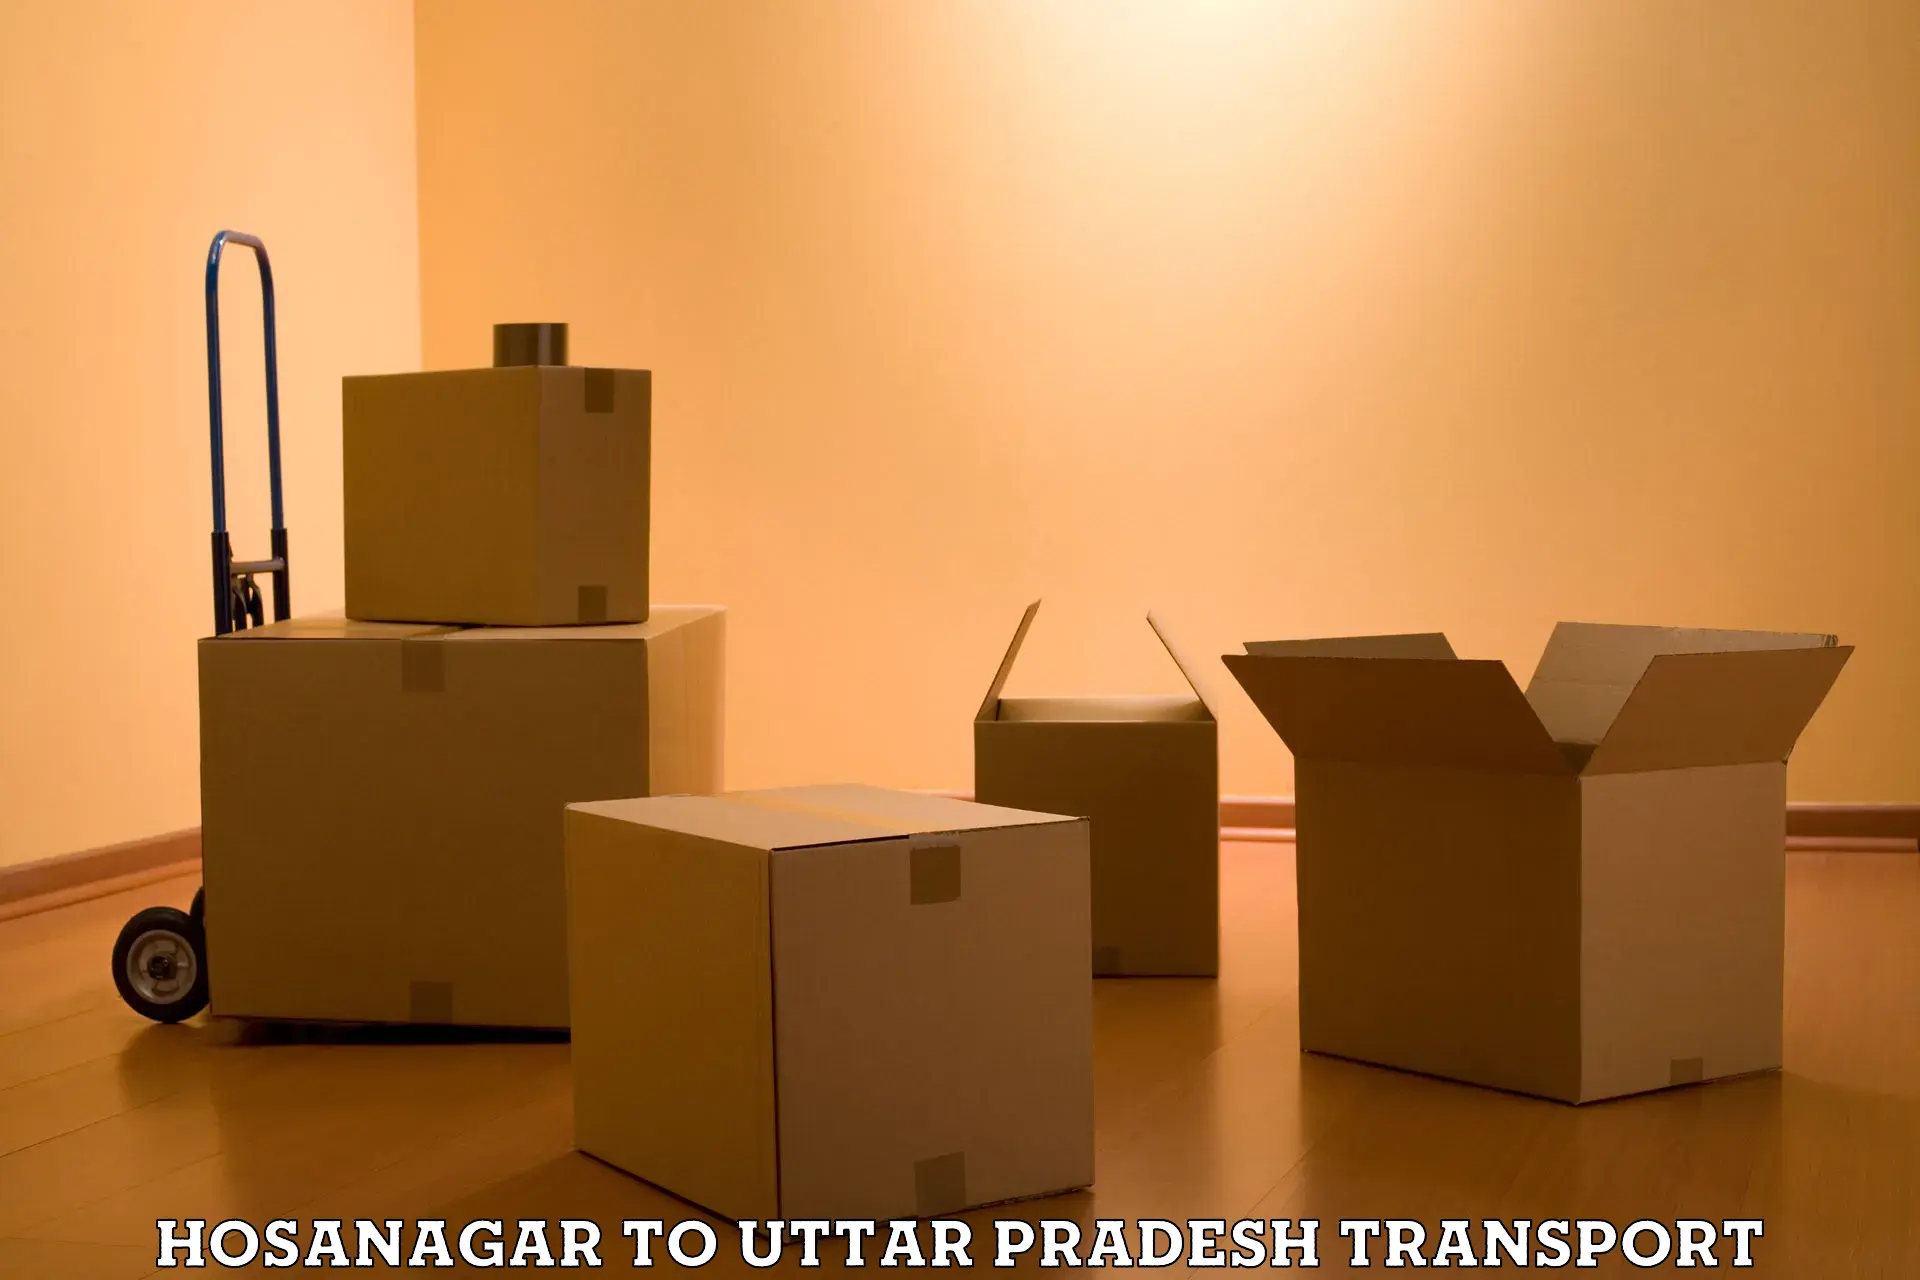 Daily parcel service transport in Hosanagar to Moradabad